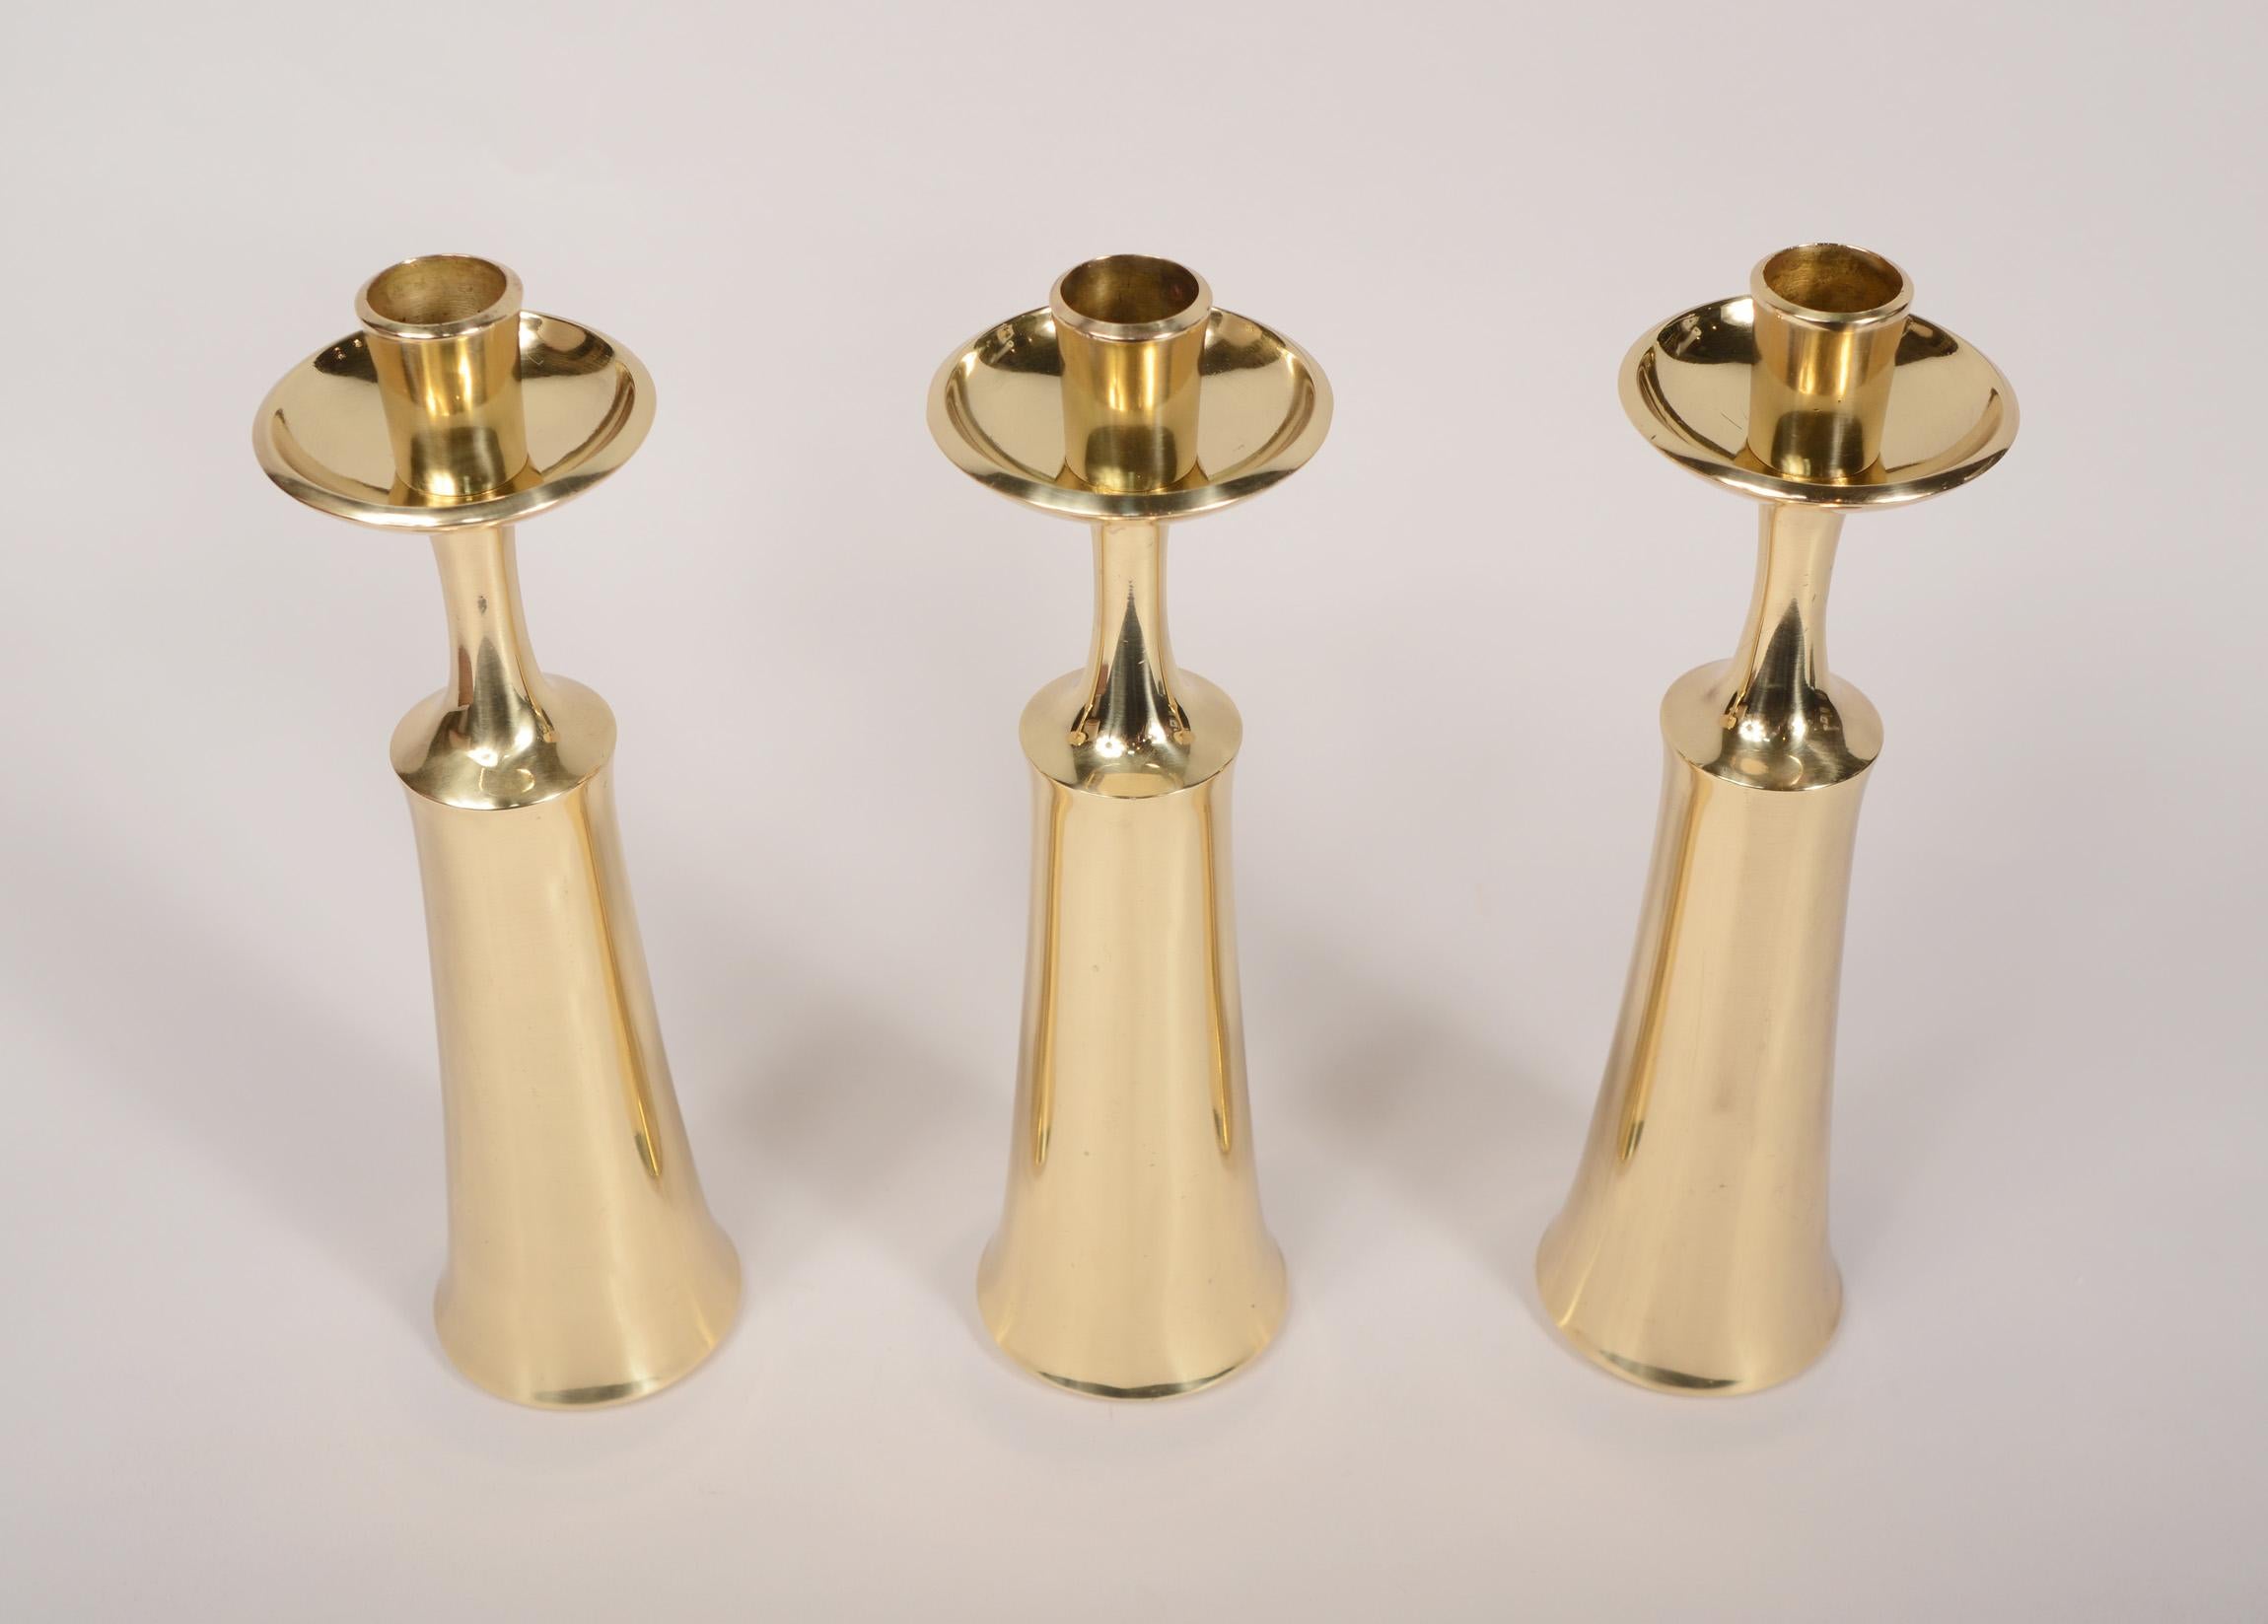 Satz von drei Kerzenhaltern aus Messing, entworfen von Jens Quistgaard für Dansk. Diese haben ein sehr elegantes, modernes Design. Der obere Teil des Kerzenhalters kann abgenommen werden, und wenn man das Stück umdreht, wird es zu einer Knospenvase.